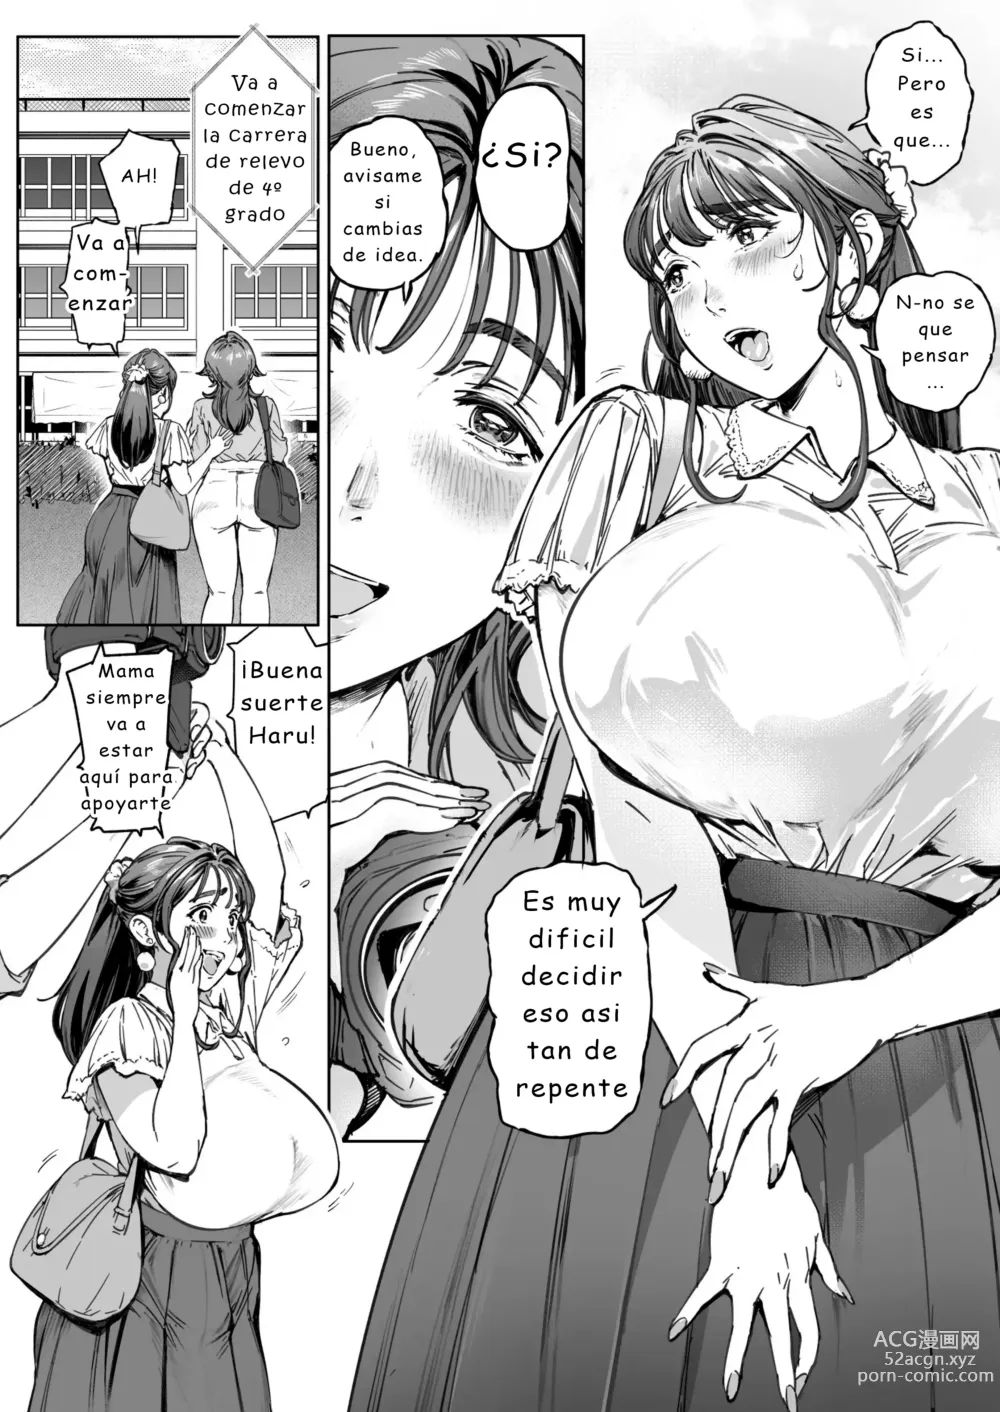 Page 28 of doujinshi Diario de observación cariñosa